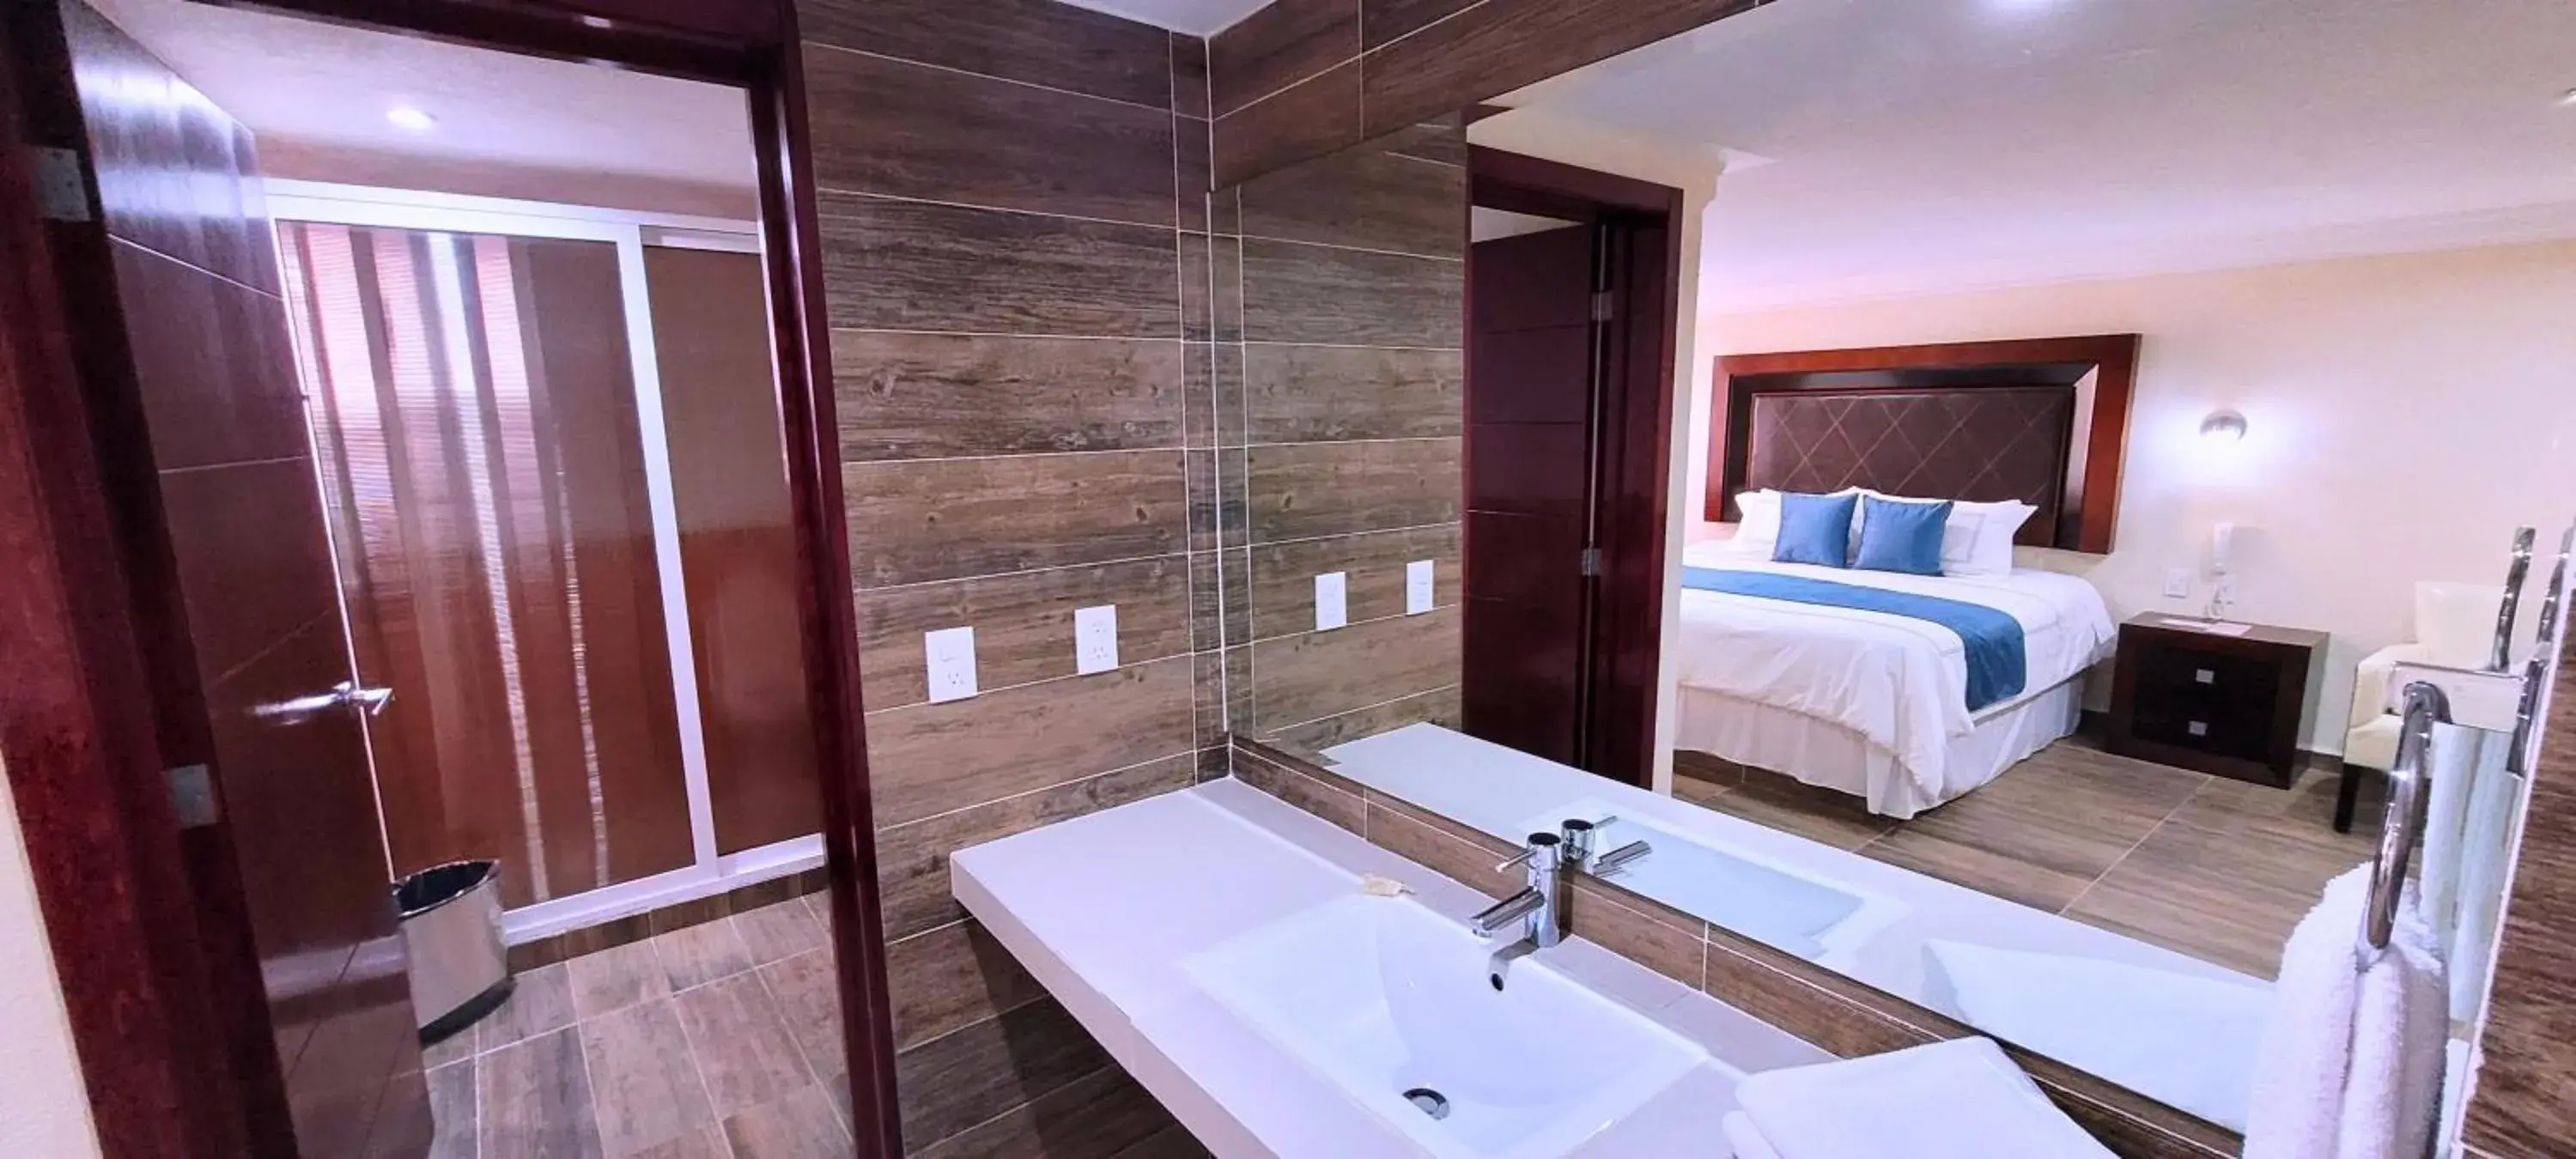 Decorative detail, Bathroom in Hotel Tierras Blancas